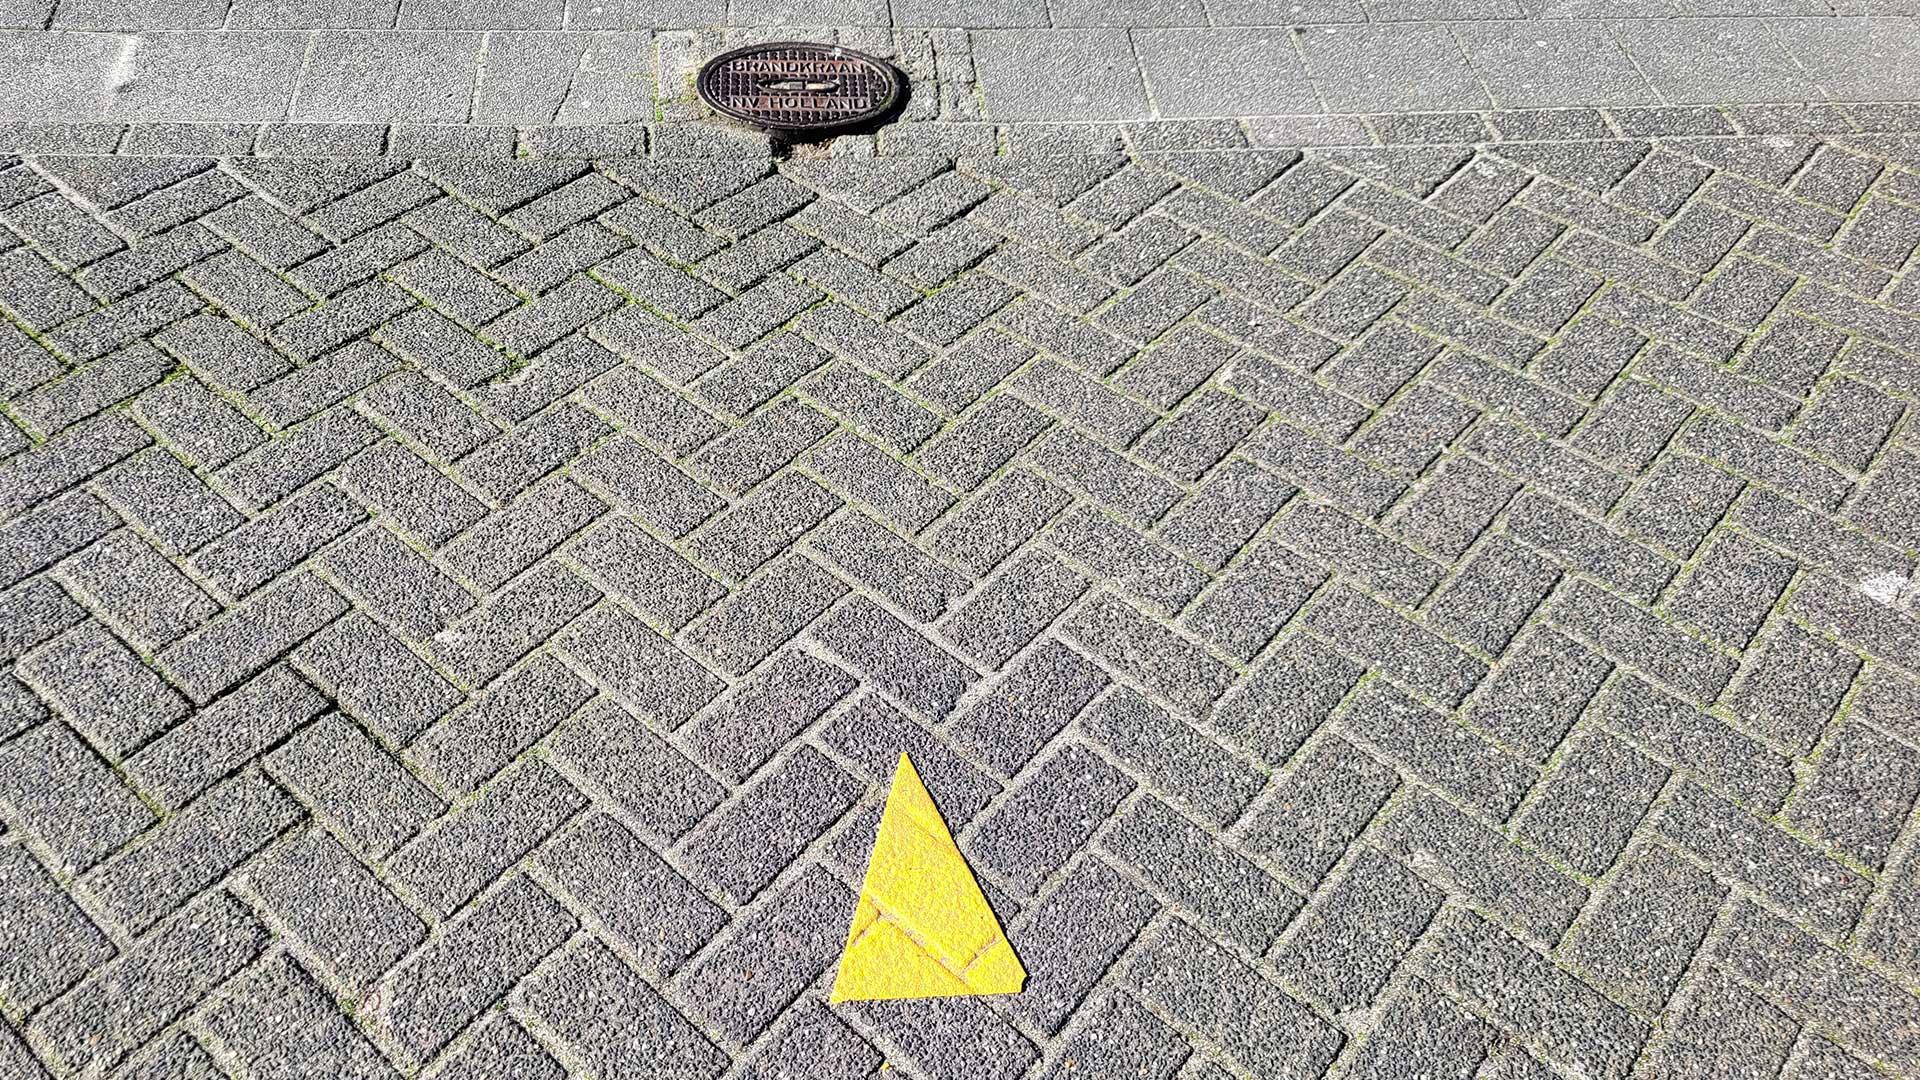 Gele driehoek op het wegdek wijst naar wateraansluiting